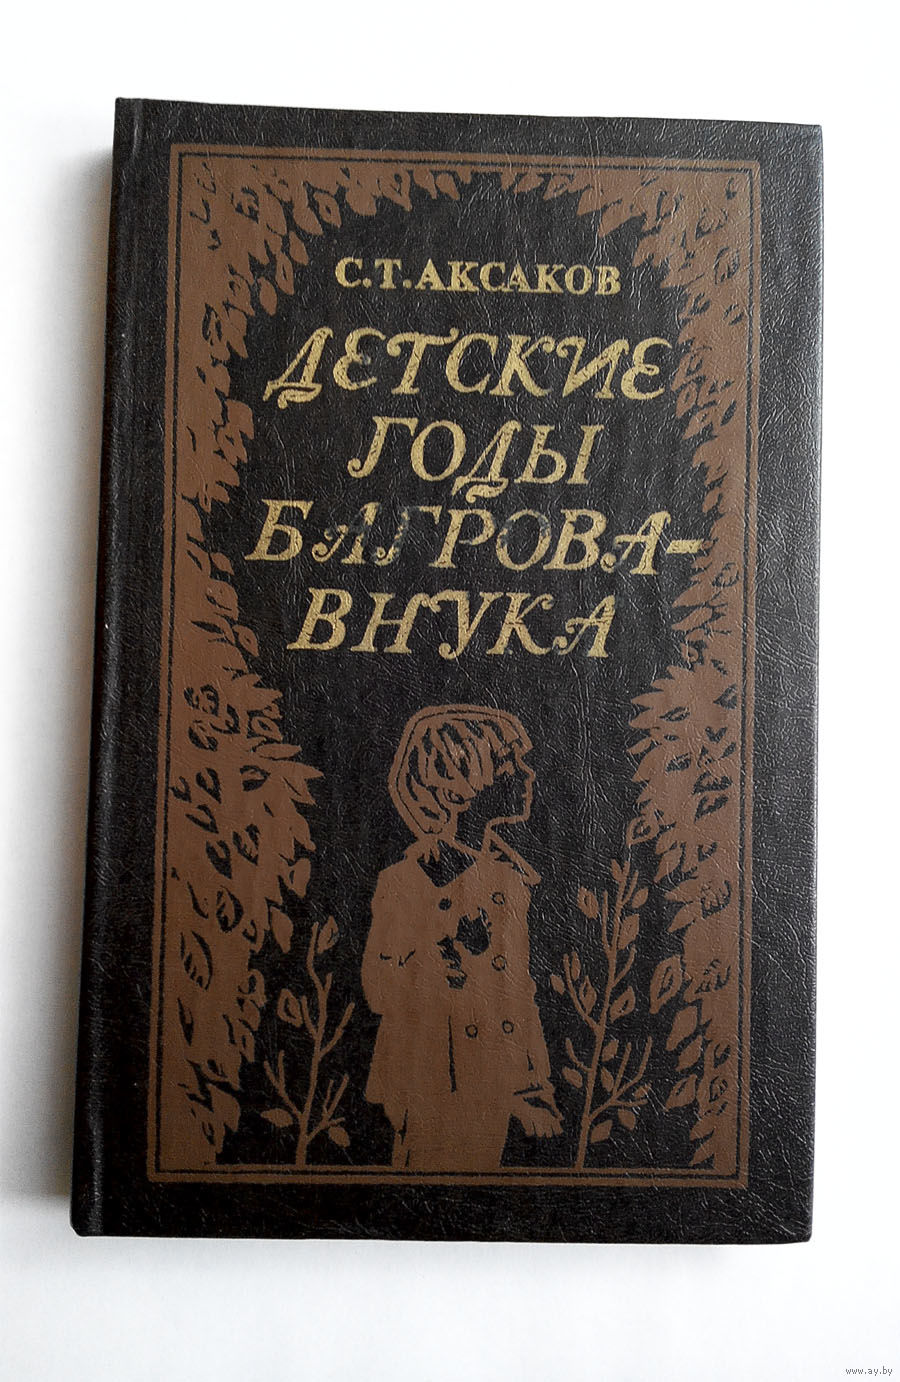 Аксаков детские годы Багрова внука читать